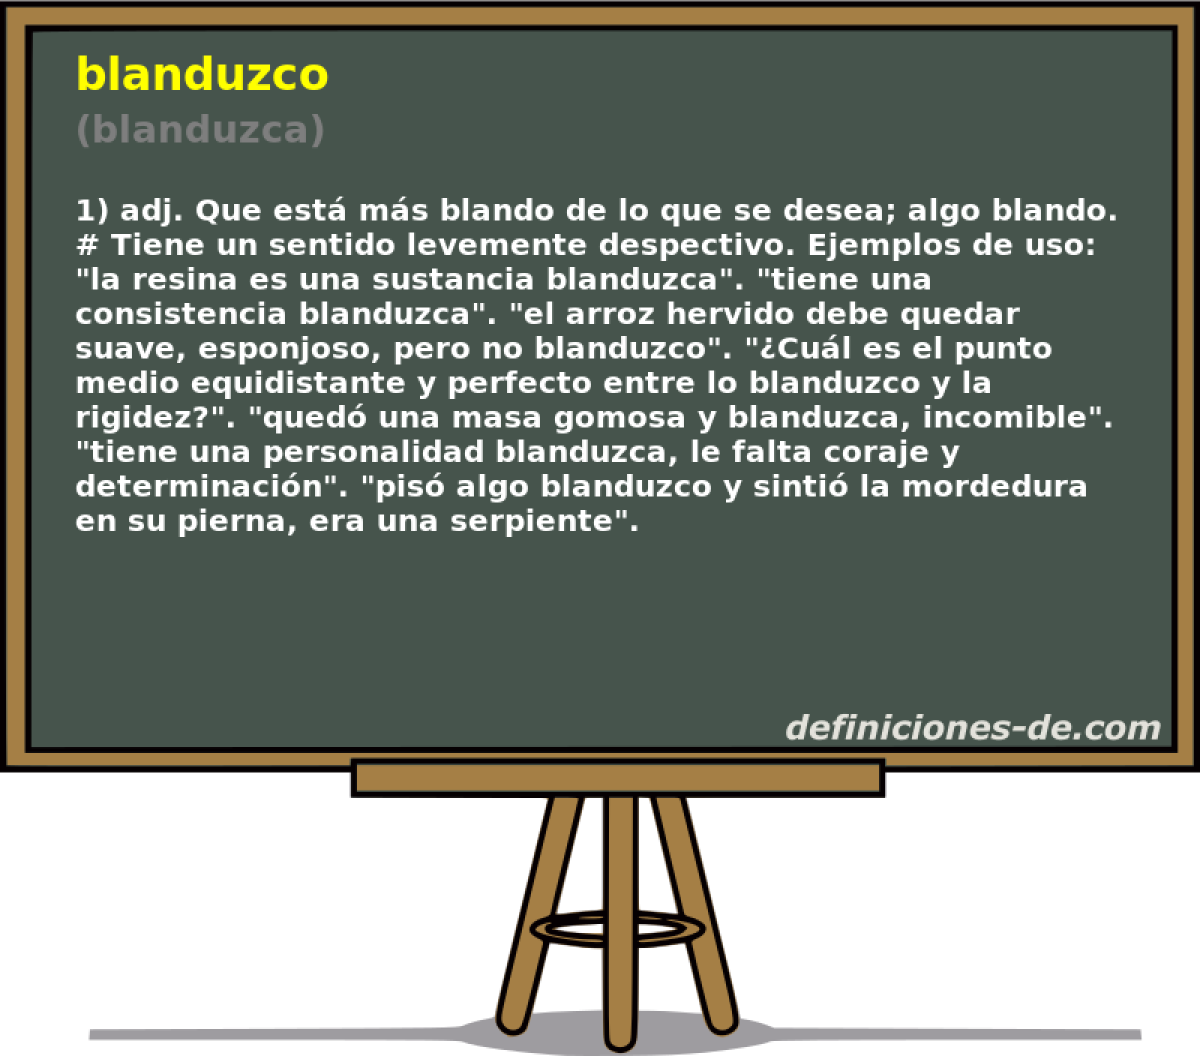 blanduzco (blanduzca)